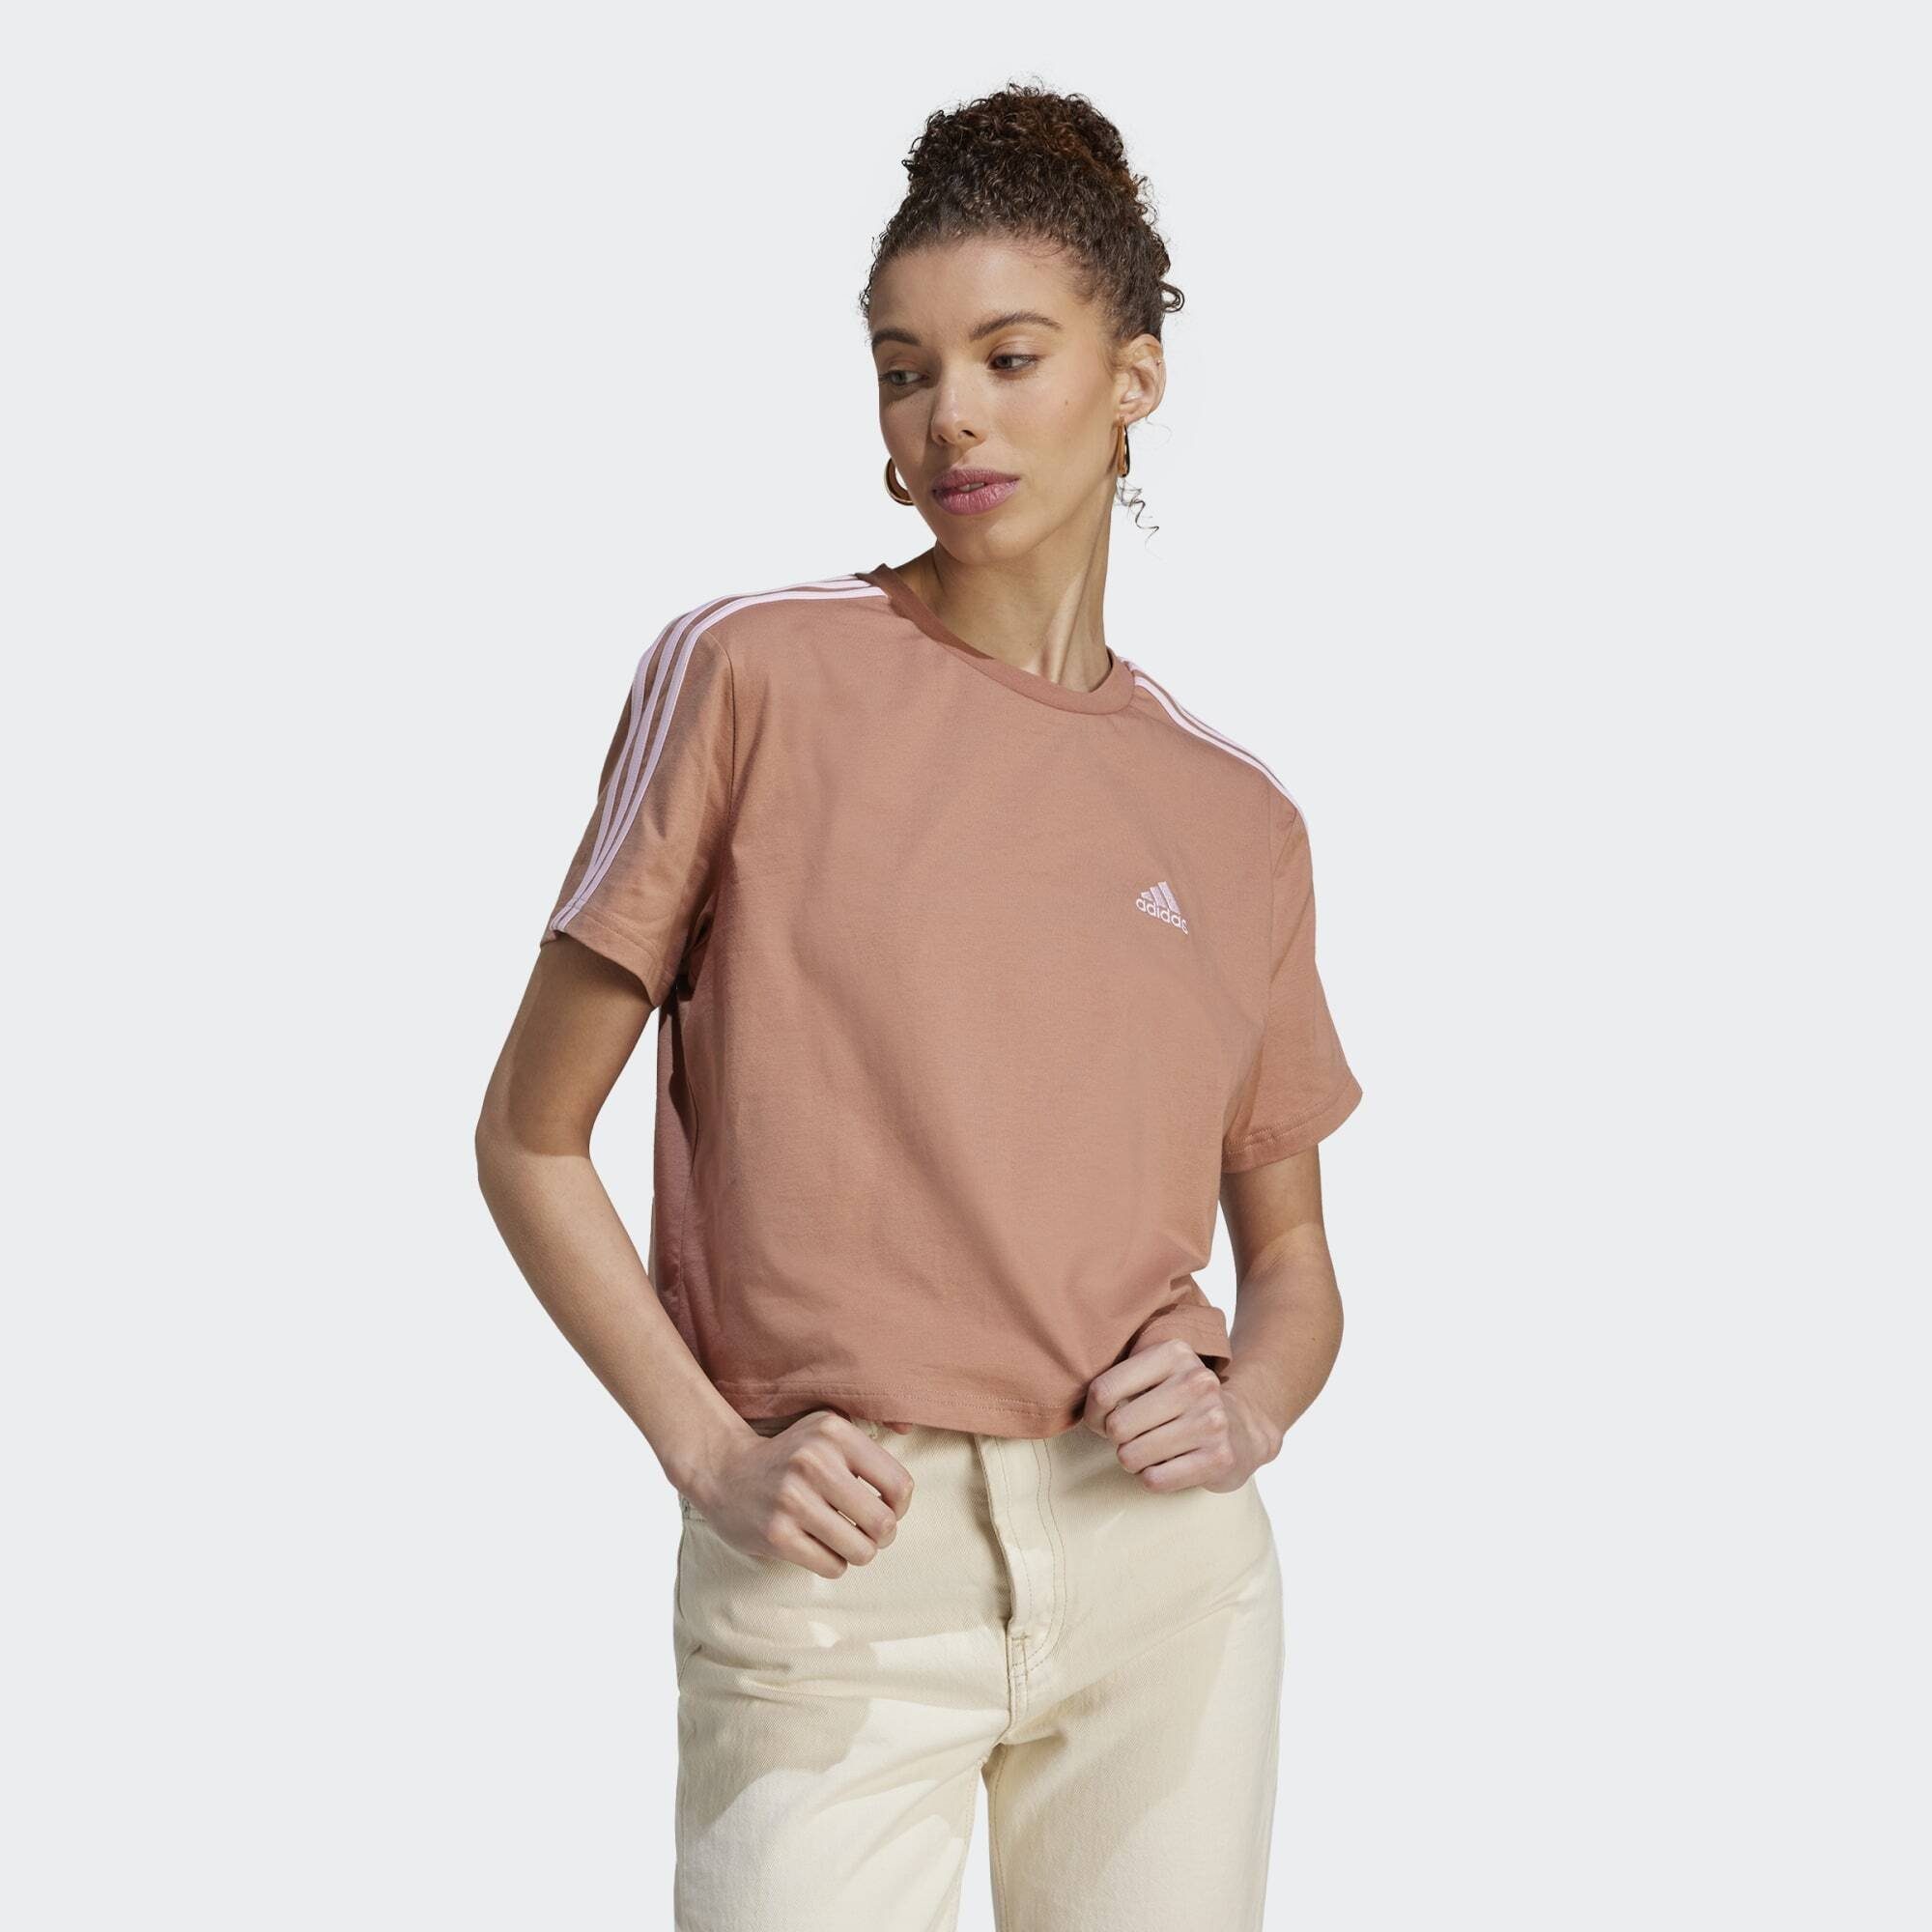 3-STREIFEN T-Shirt Clay Pink Clear Strata Sportswear / CROP-TOP JERSEY ESSENTIALS SINGLE adidas